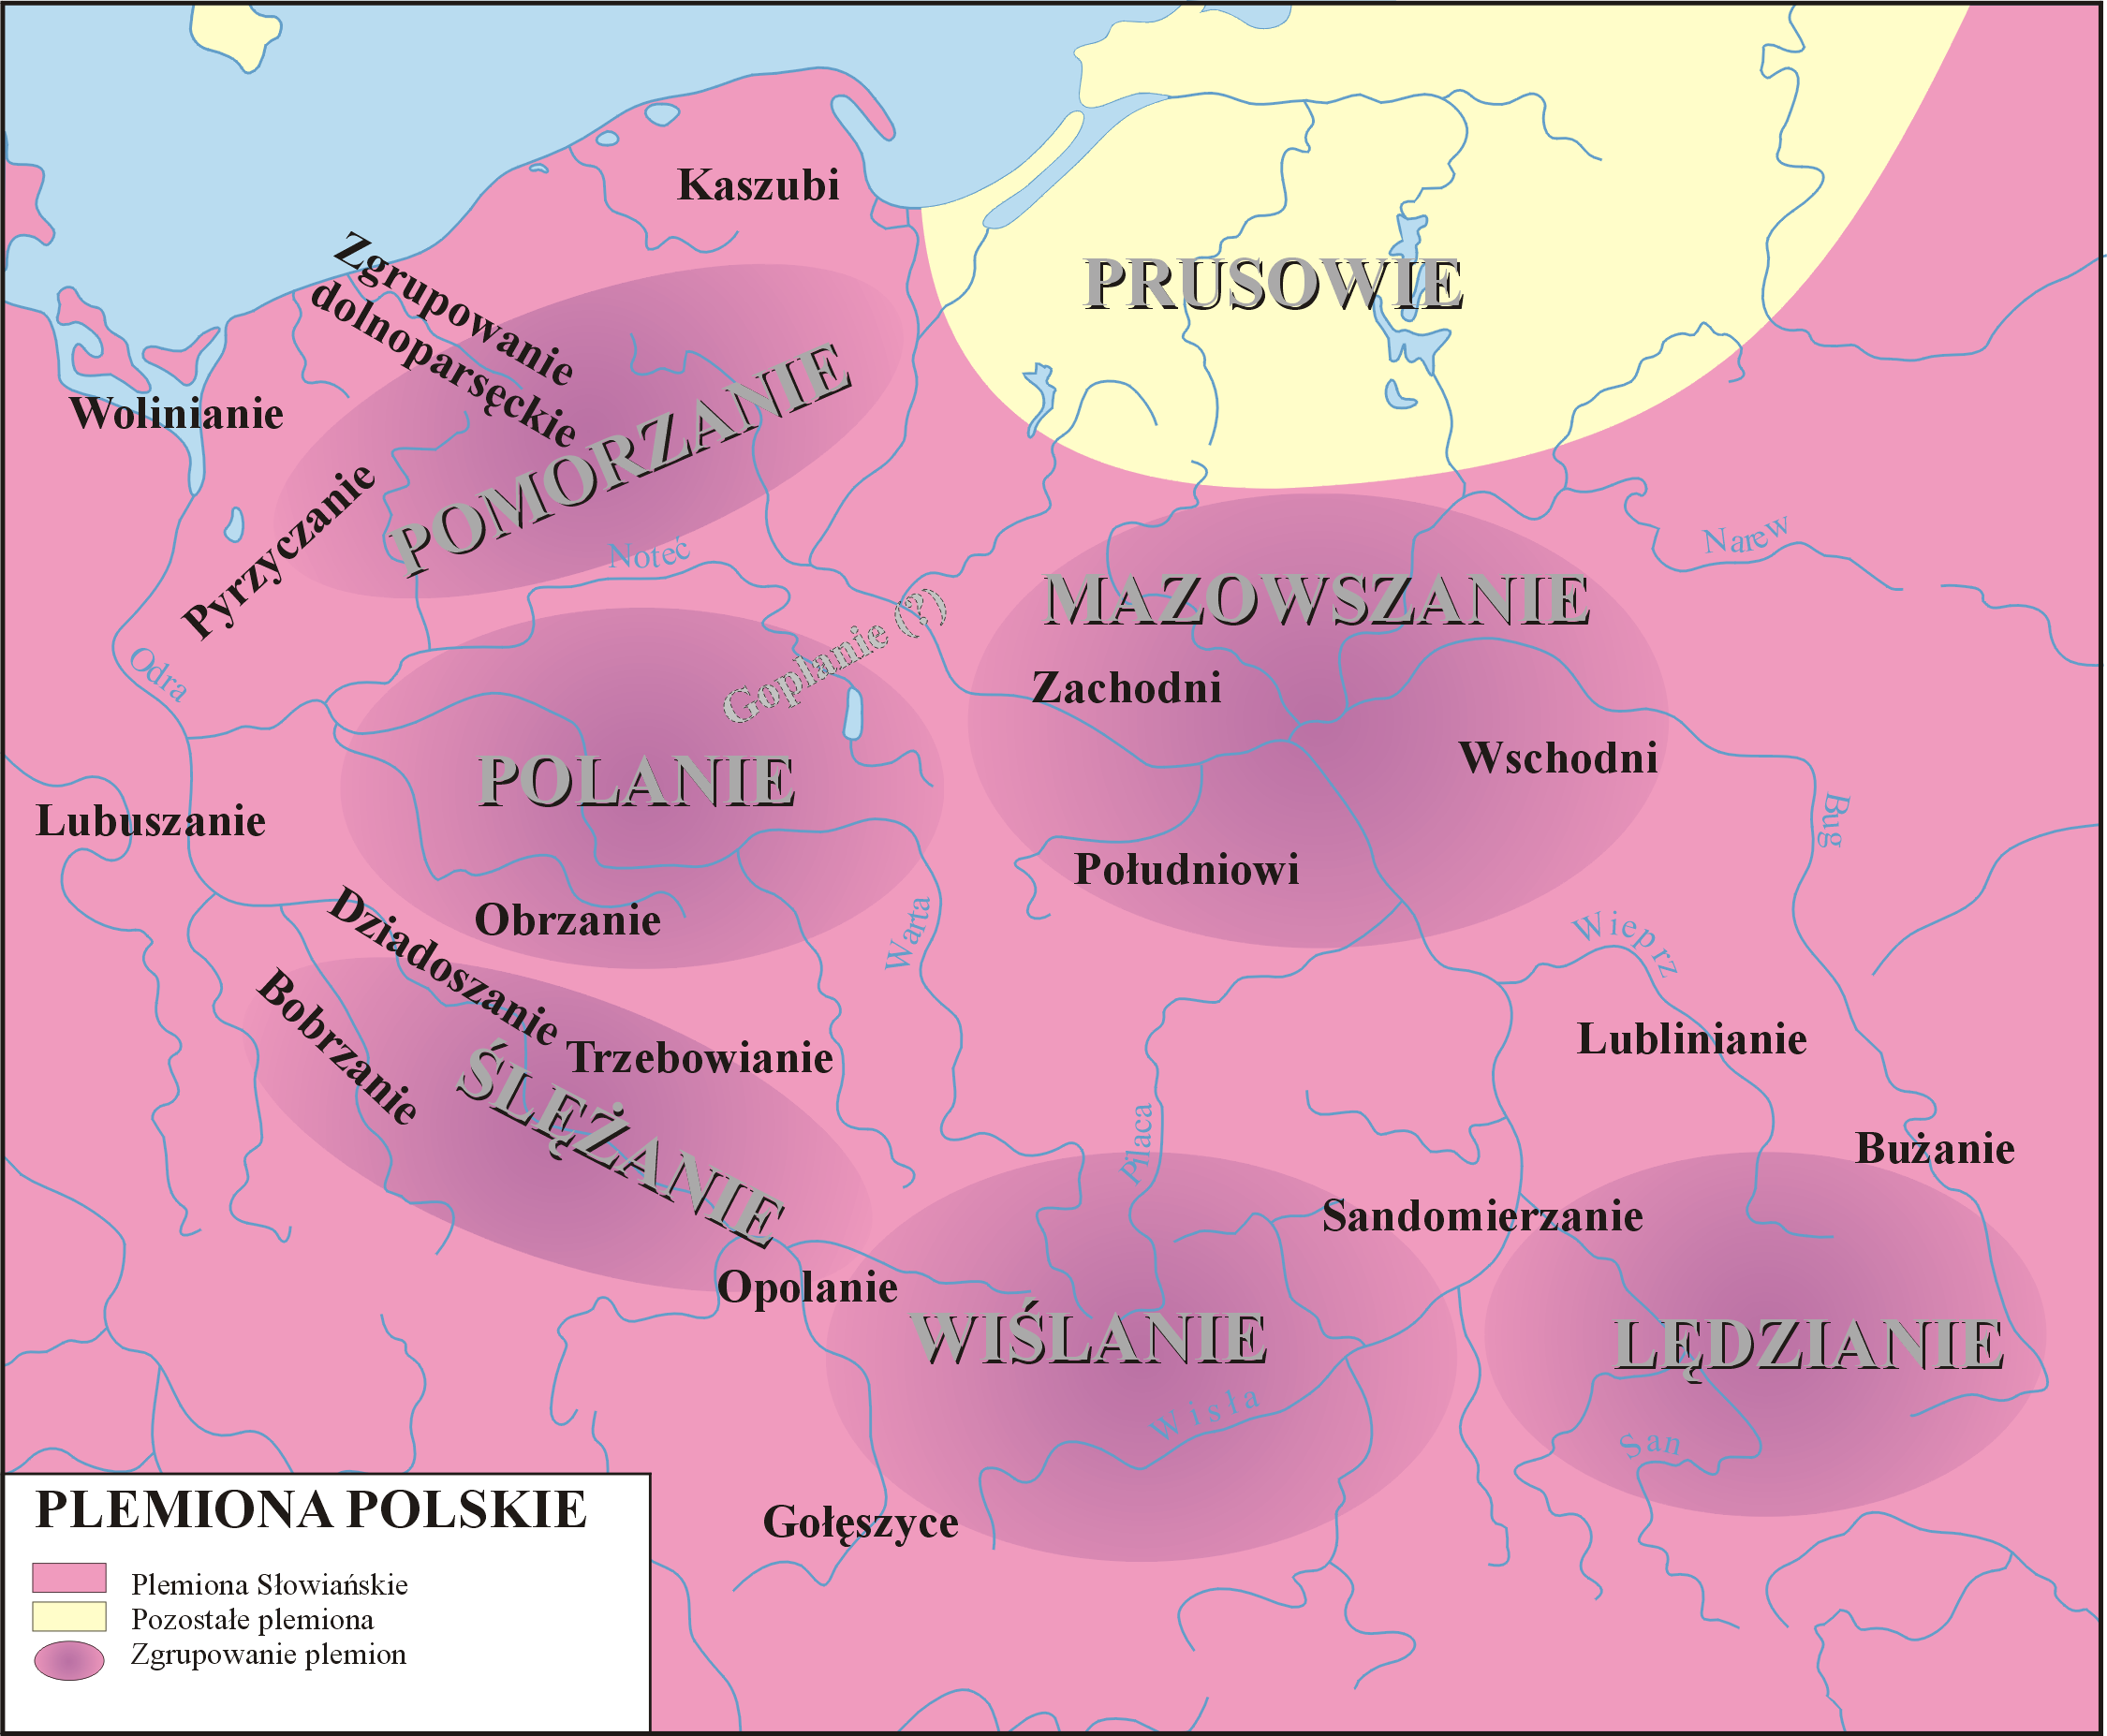 Plemiona polskie w IX i X wieku